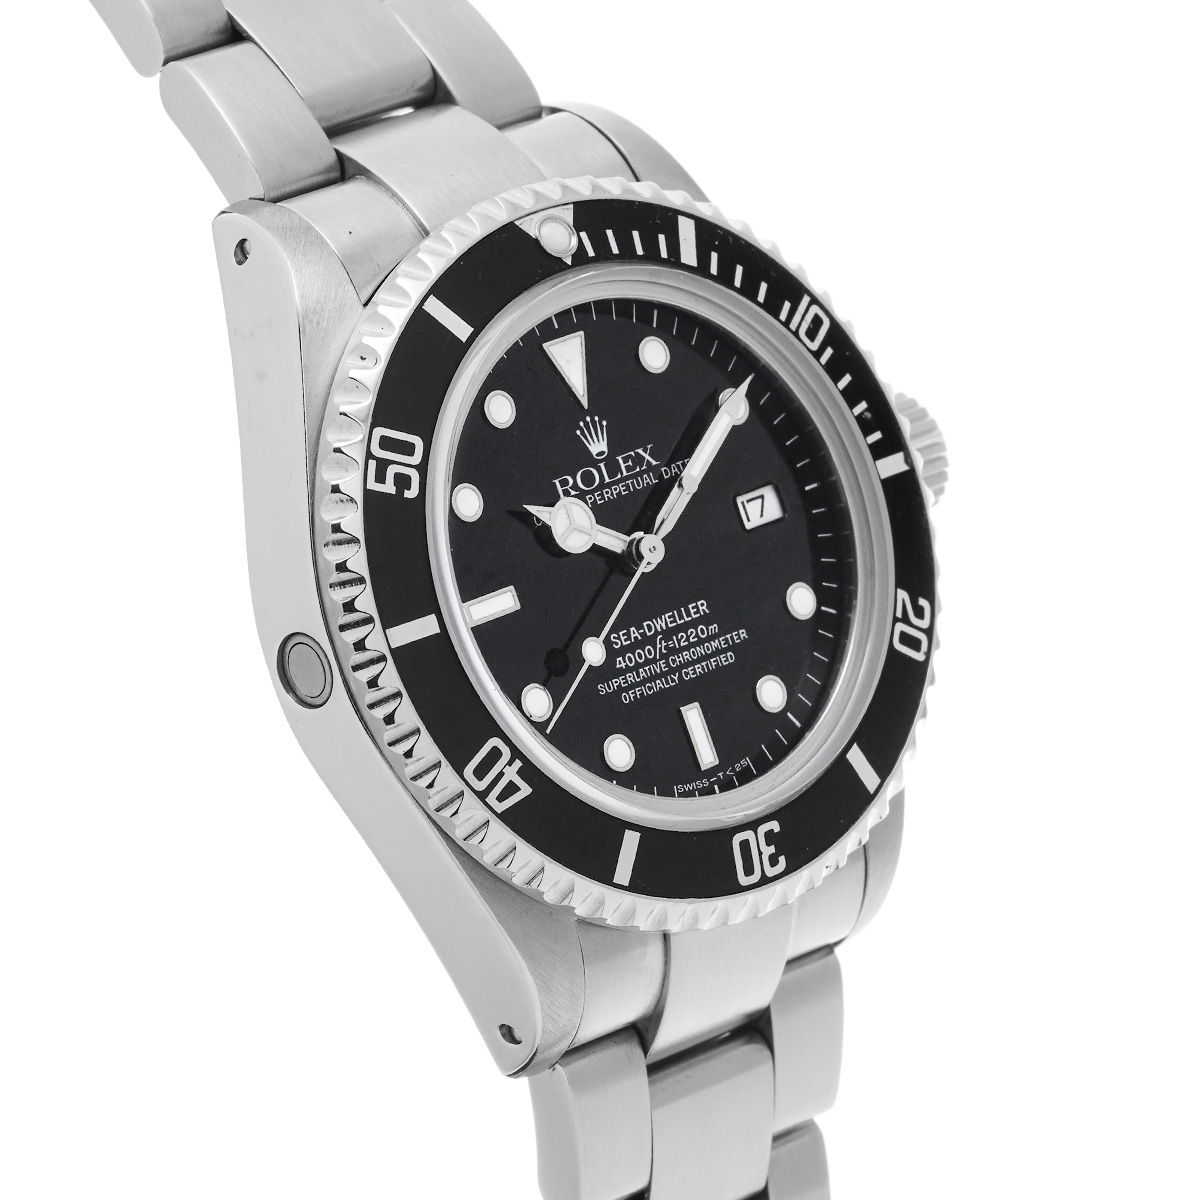 ロレックス シードゥエラー 16600 ブラック メンズ 時計 【中古】【wristwatch】